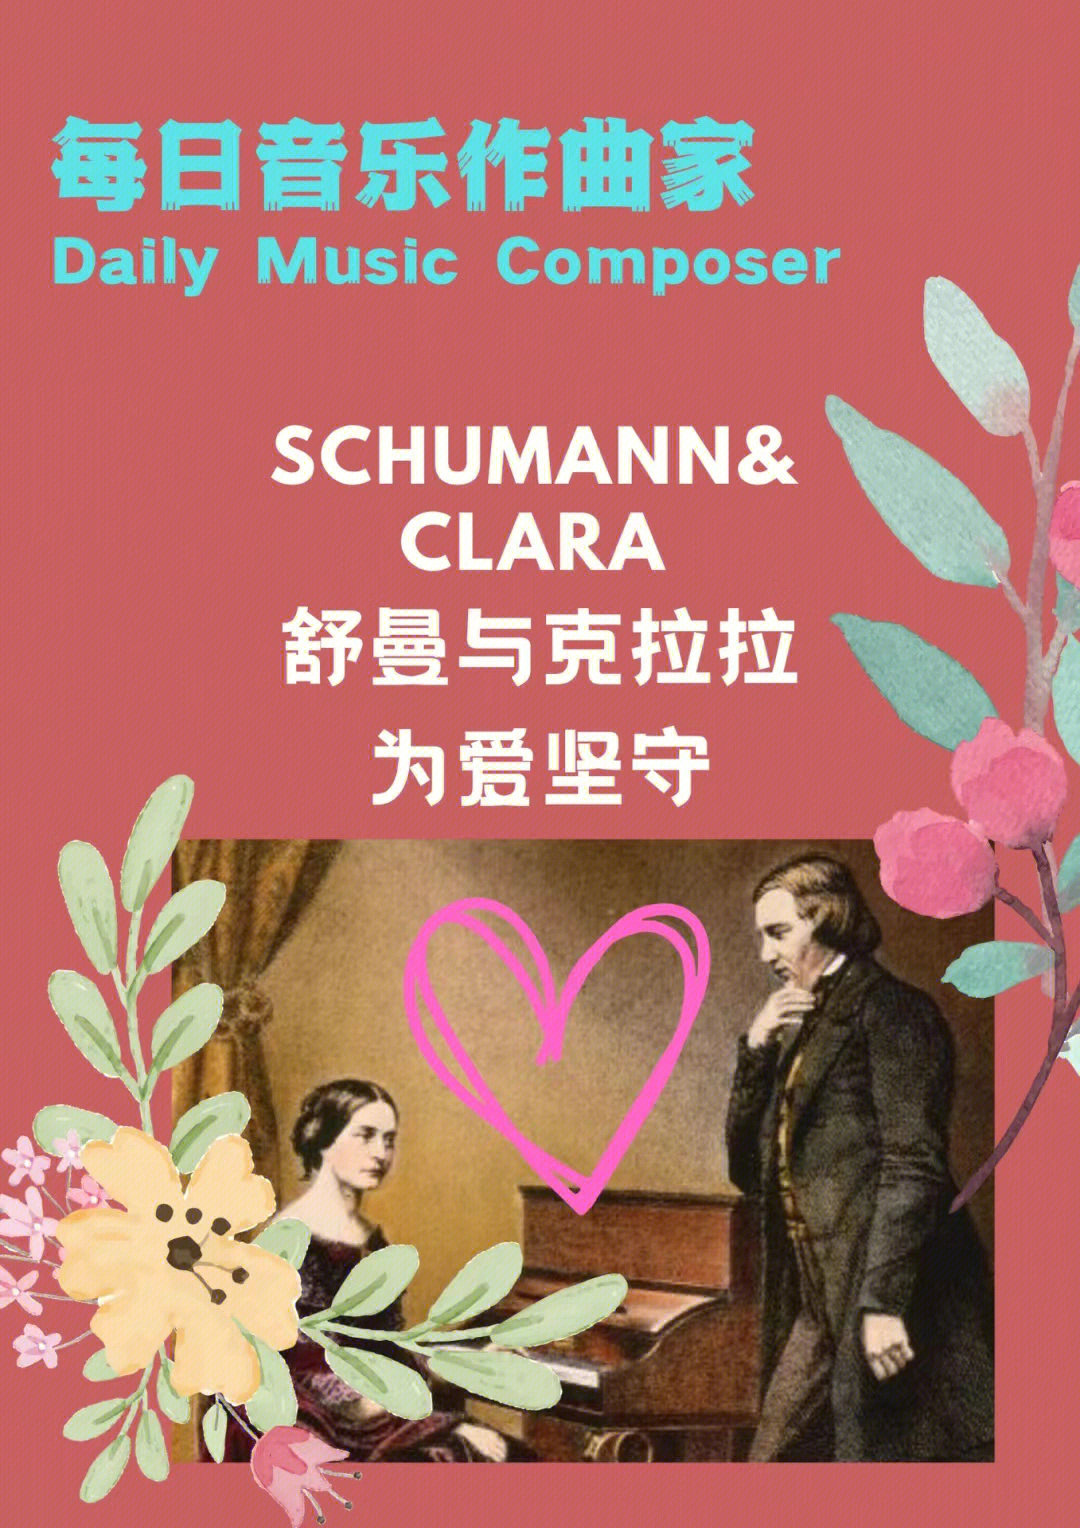 每日音乐作曲家舒曼与克拉拉的爱情故事